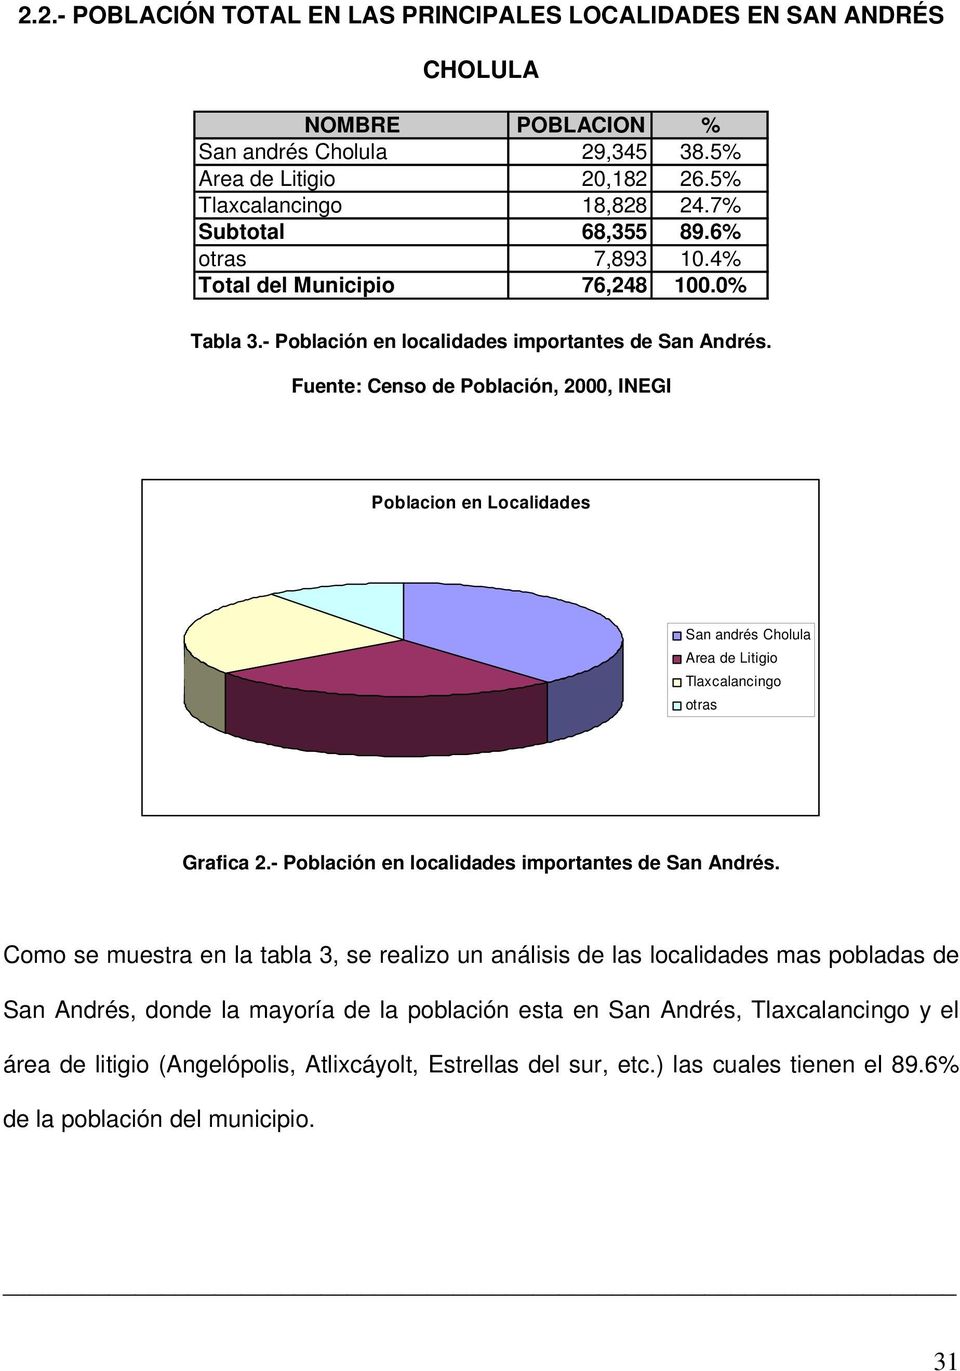 Fuente: Censo de Población, 2000, INEGI Poblacion en Localidades San andrés Cholula Area de Litigio Tlaxcalancingo otras Grafica 2.- Población en localidades importantes de San Andrés.